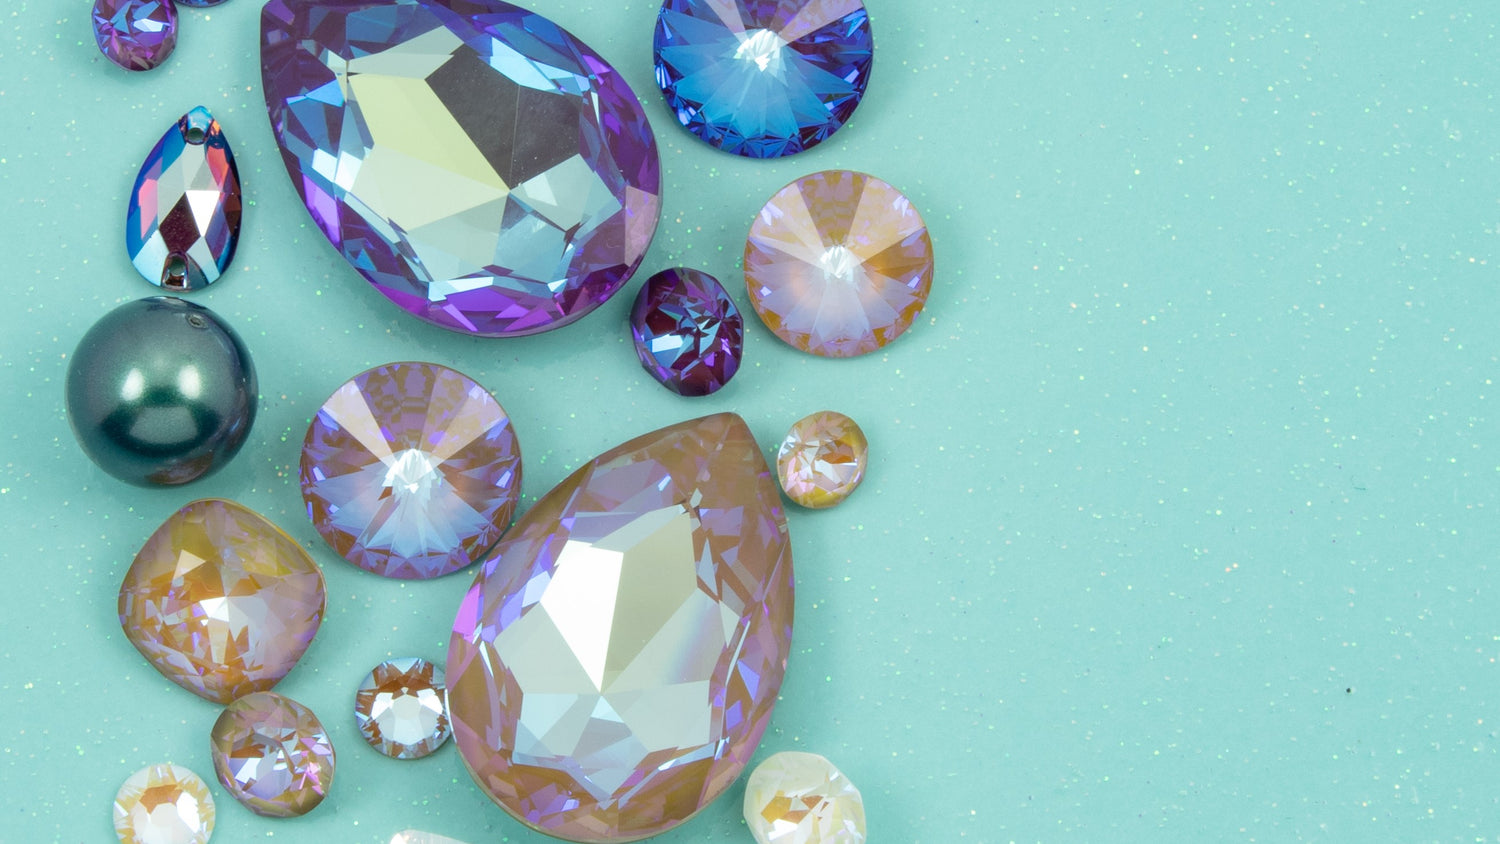 Swarovski Crystals  Buy Swarovski Crystal Components